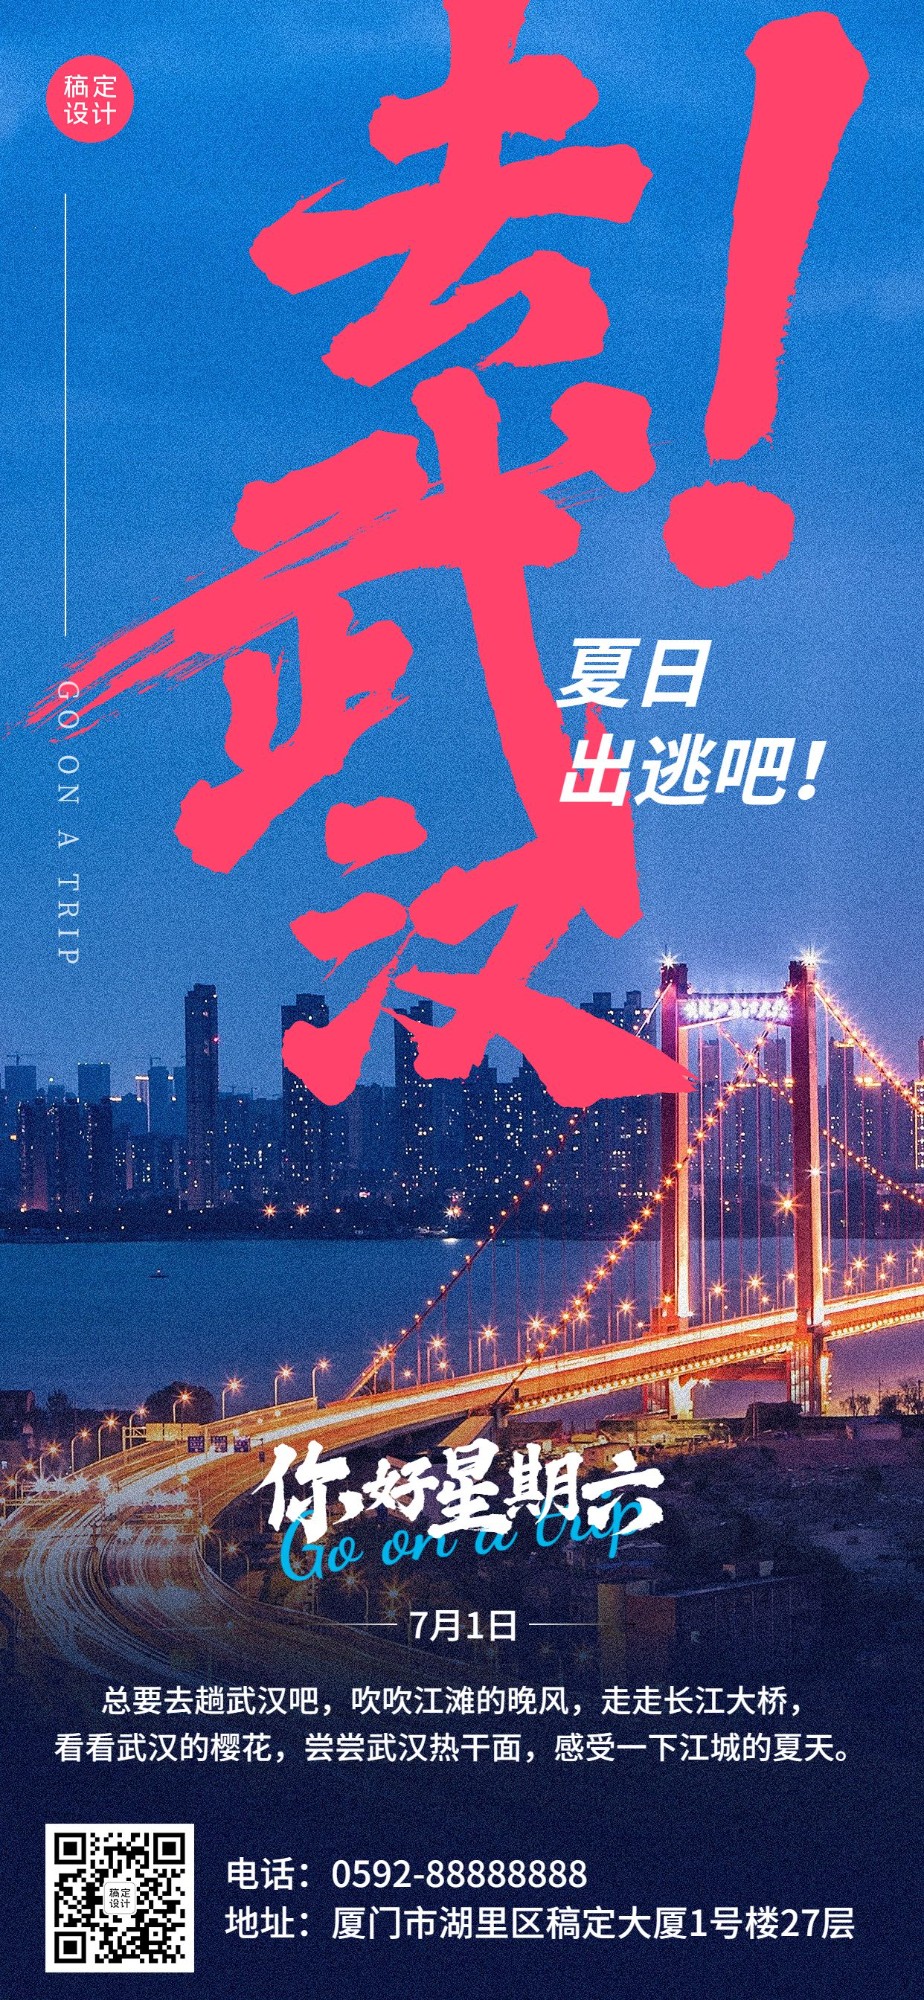 武汉旅游日签问候全屏竖版海报预览效果